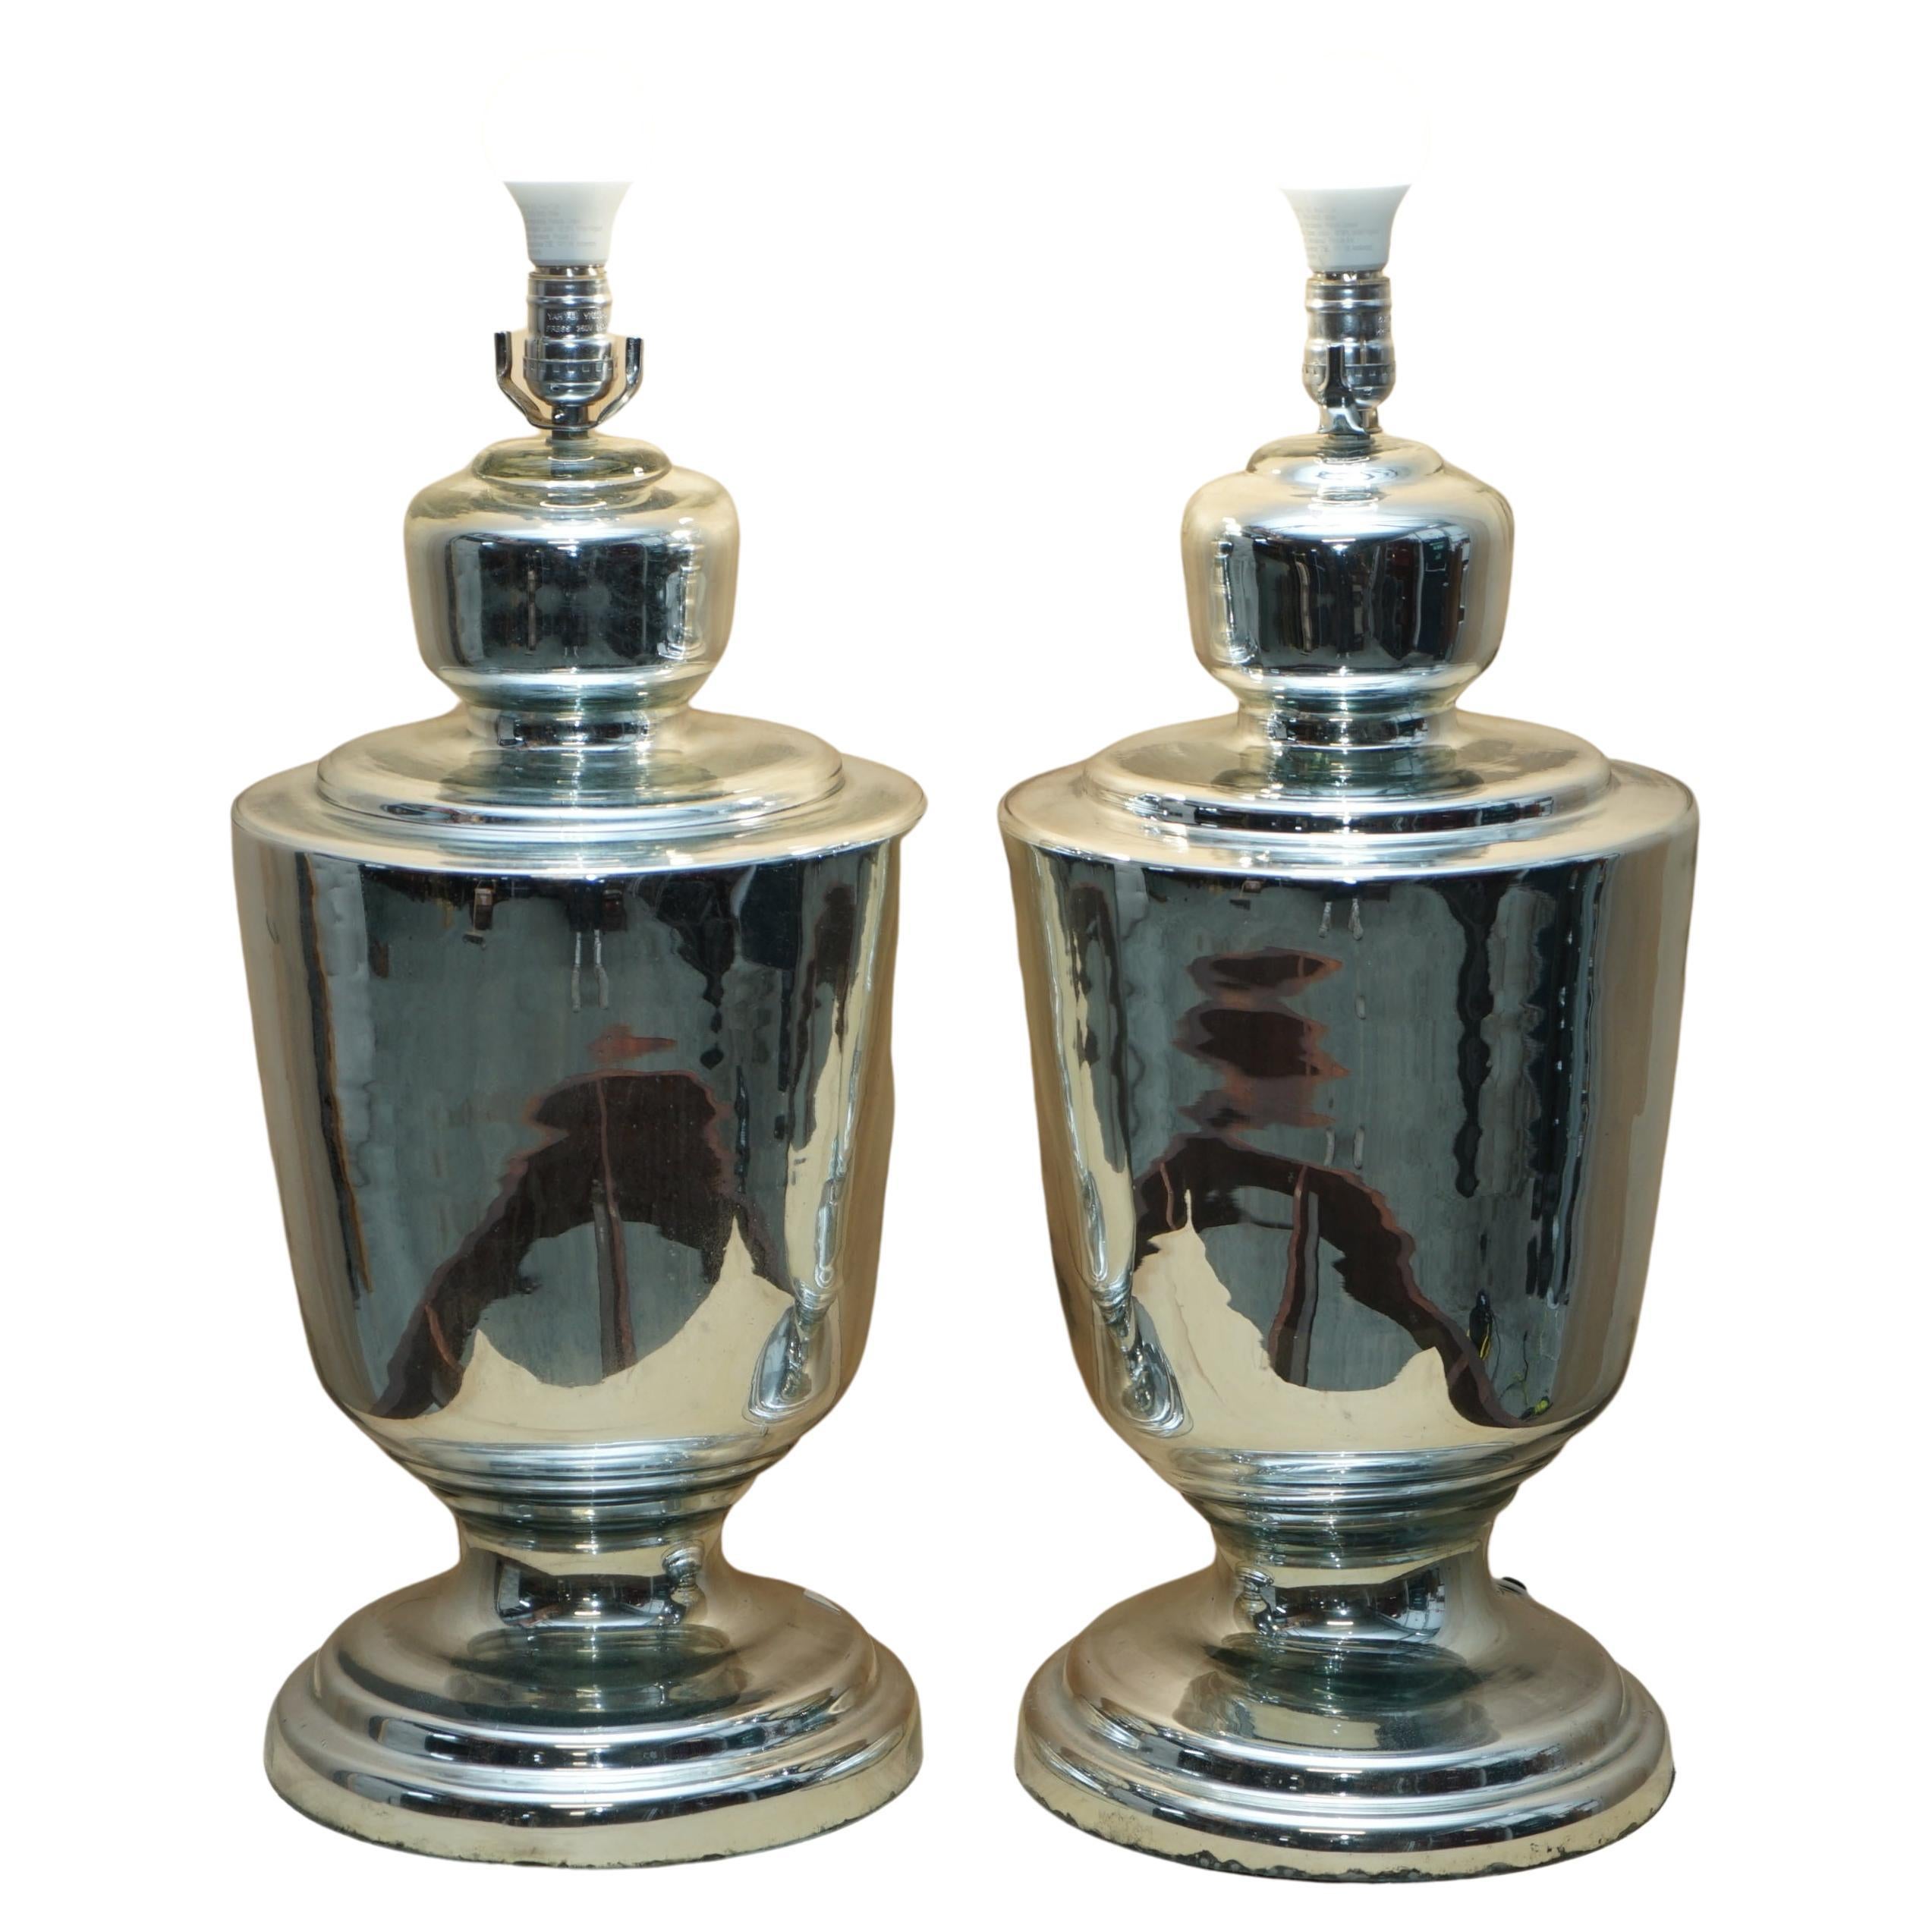 Très grande paire de lampes-urnes en verre renard en forme d'urne entièrement restaurées